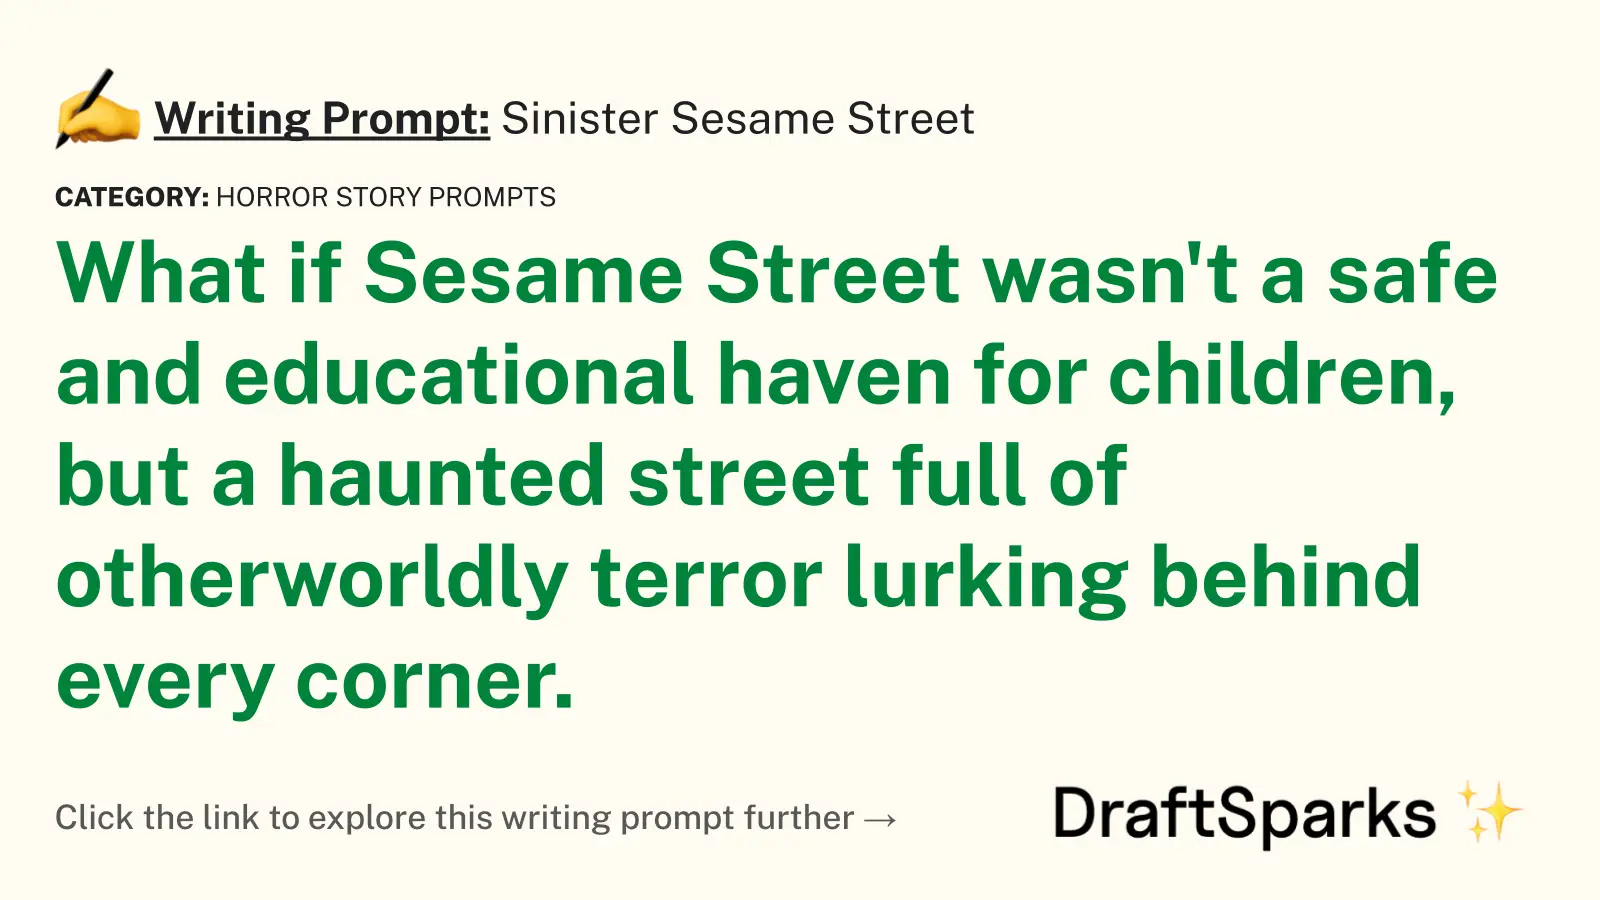 Sinister Sesame Street